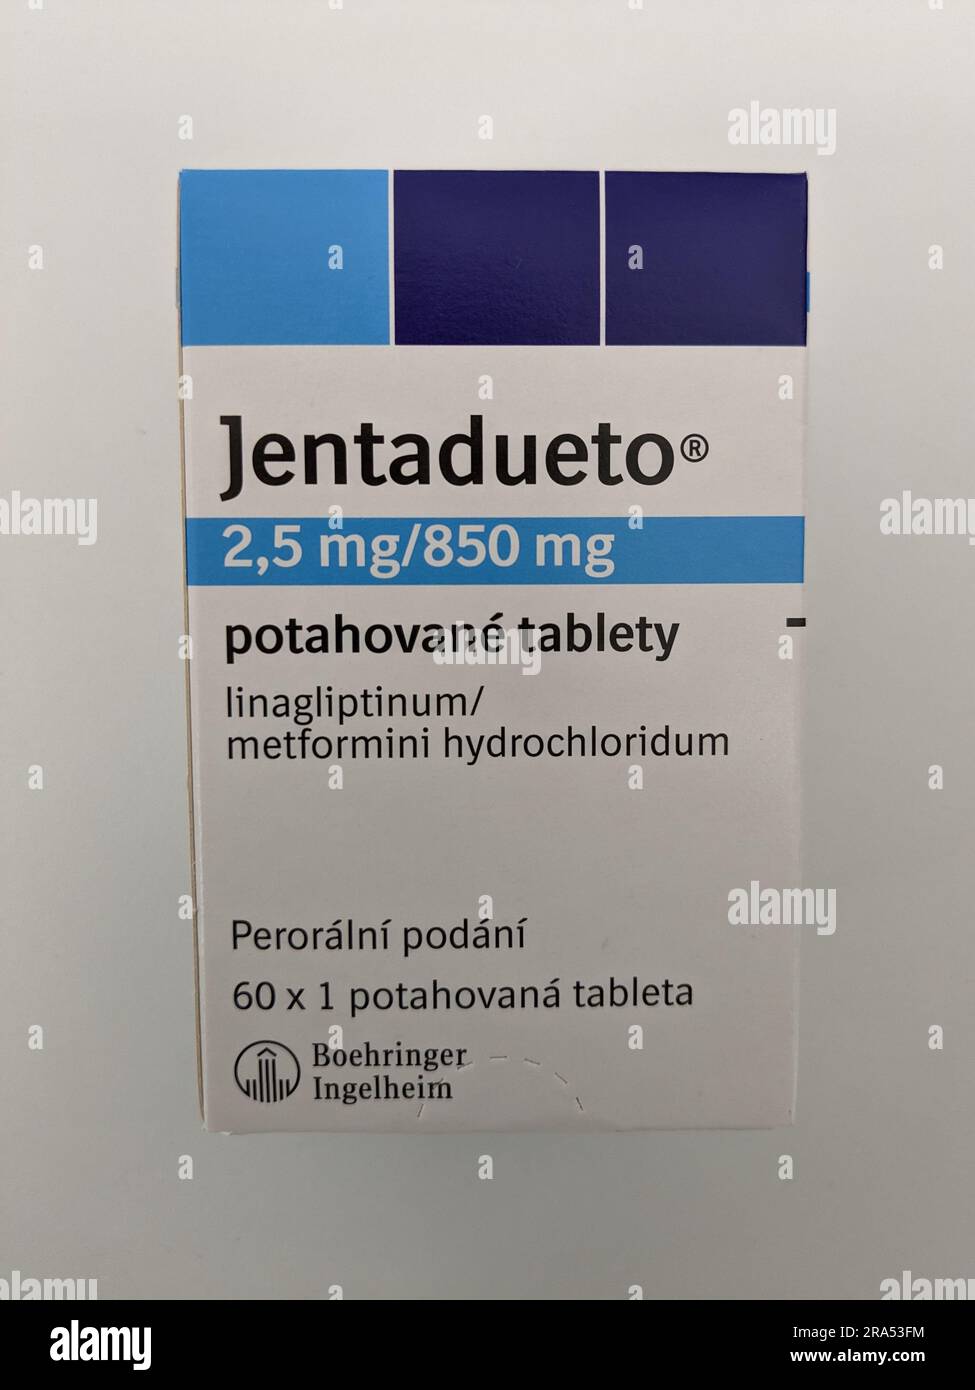 JENTADUETO ist ein verschreibungspflichtiges Arzneimittel, das 2 Diabetes-Arzneimittel, Linagliptin und metformin.can enthält und zusammen mit einer Diät und Bewegung zur Senkung des Blutdrucks angewendet wird Stockfoto